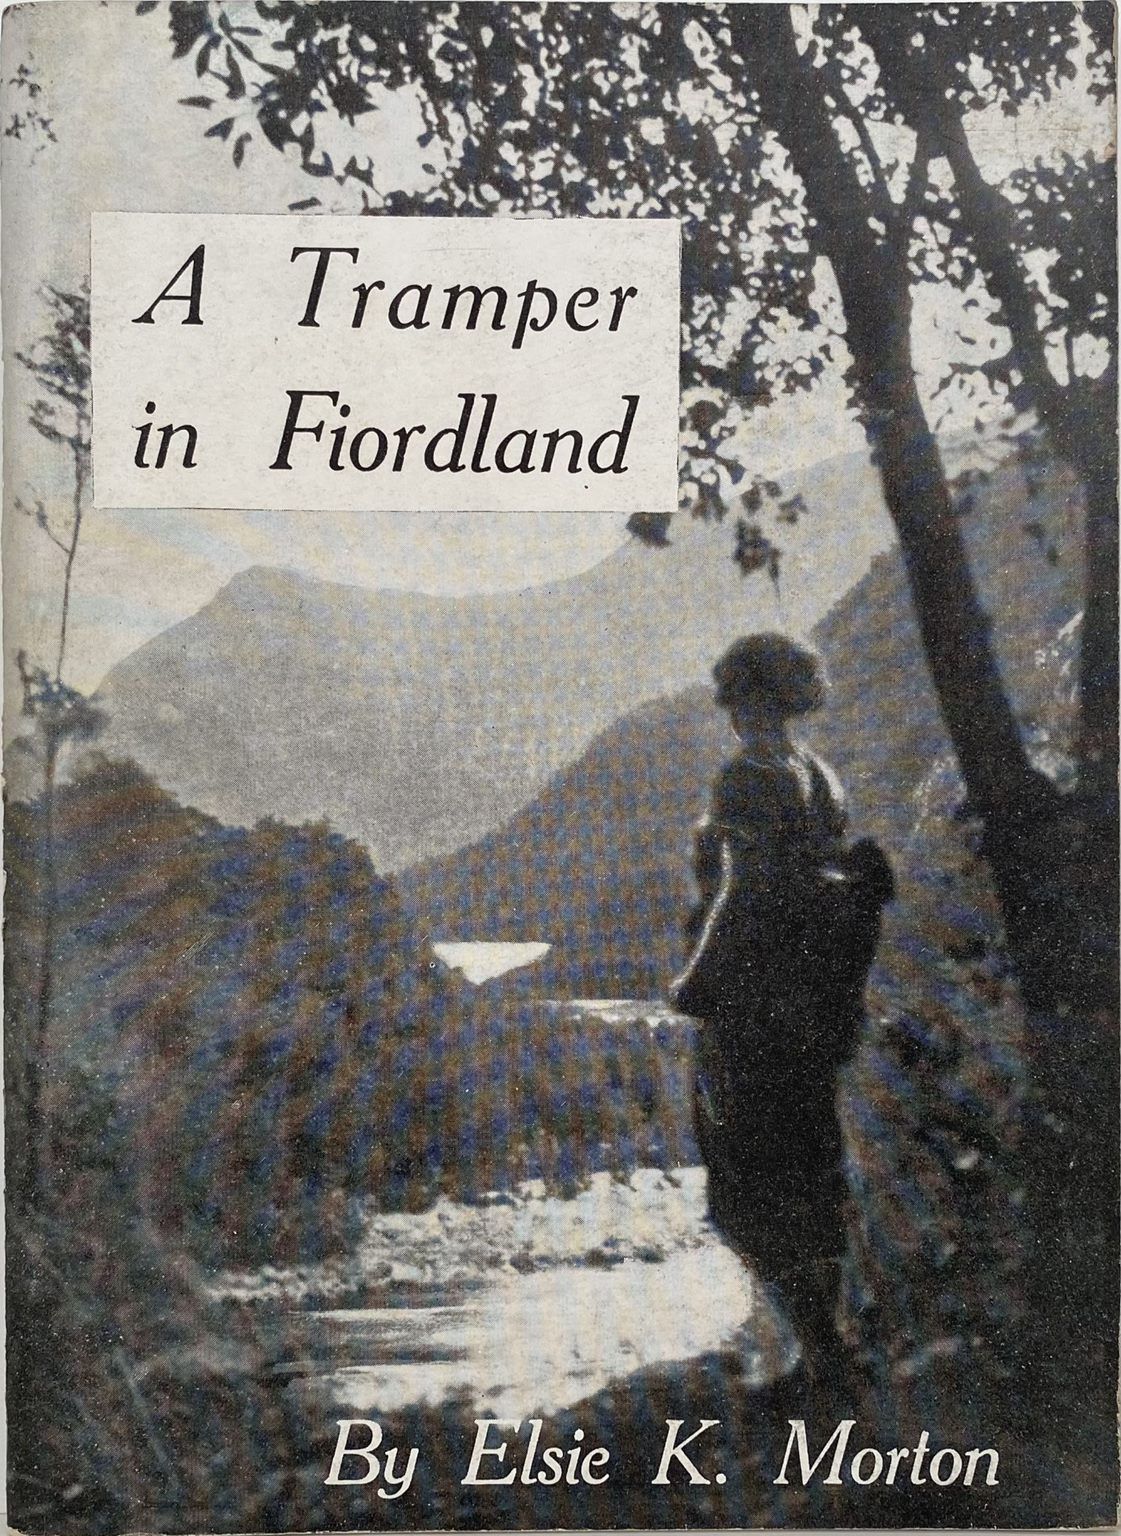 A Tramper in Fiordland